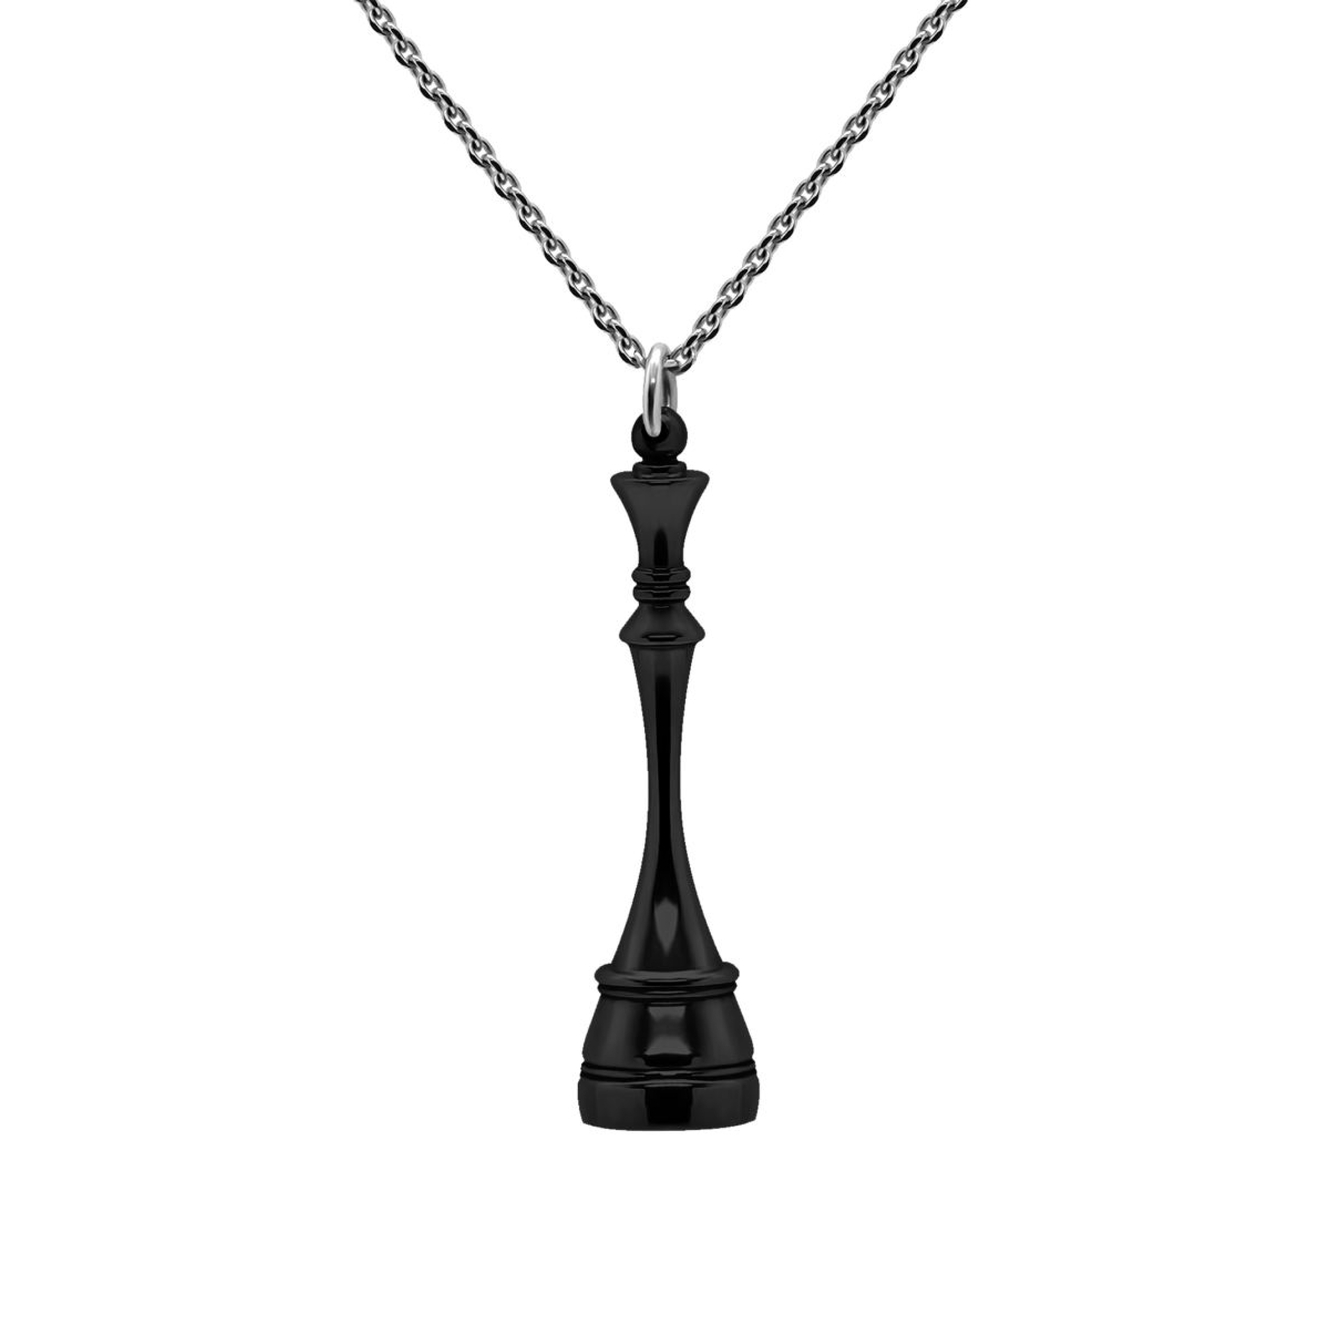 Prosto Jewelry Подвеска Королева Black из серебра подвеска серебряная prosto jewelry с серебрянным шариком м 1 шт